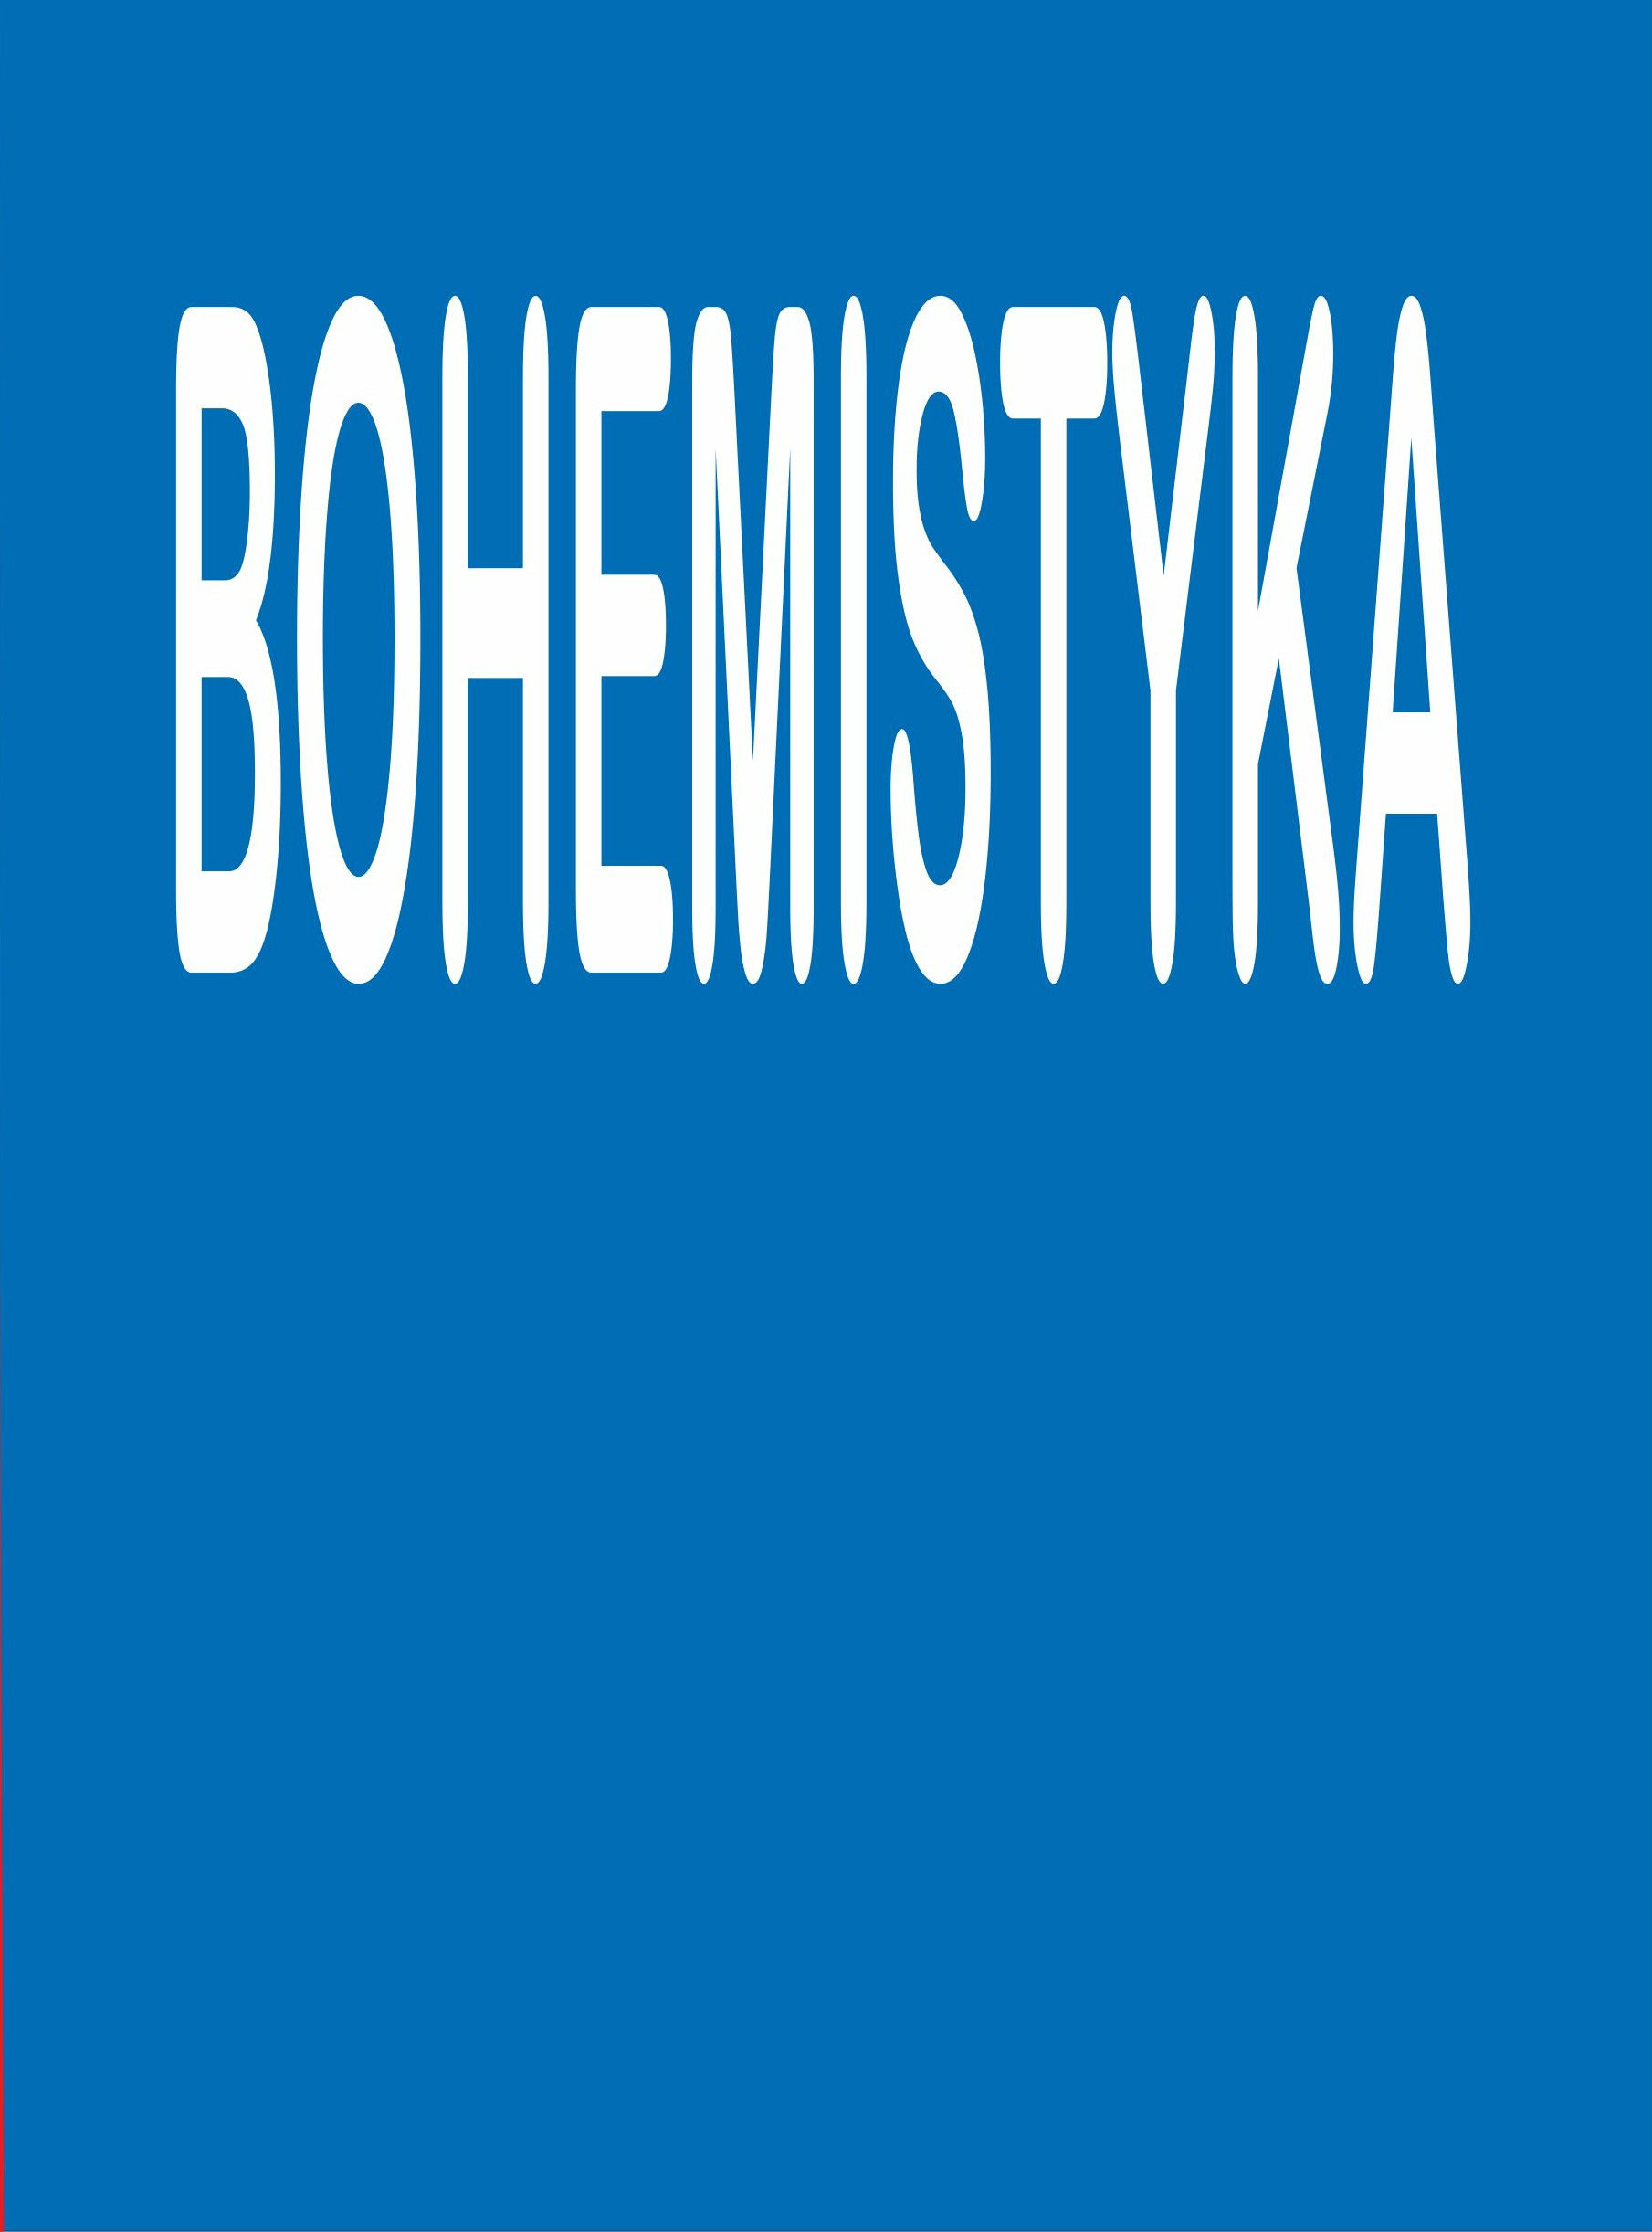 [Book Reviews]Dobrava Moldanová, Na písčitých půdách. České spisovatelky na přelomu 19. a 20. století, Praha 2011, 108 + 11 s. ISBN 978–80–86781–17–4 Cover Image